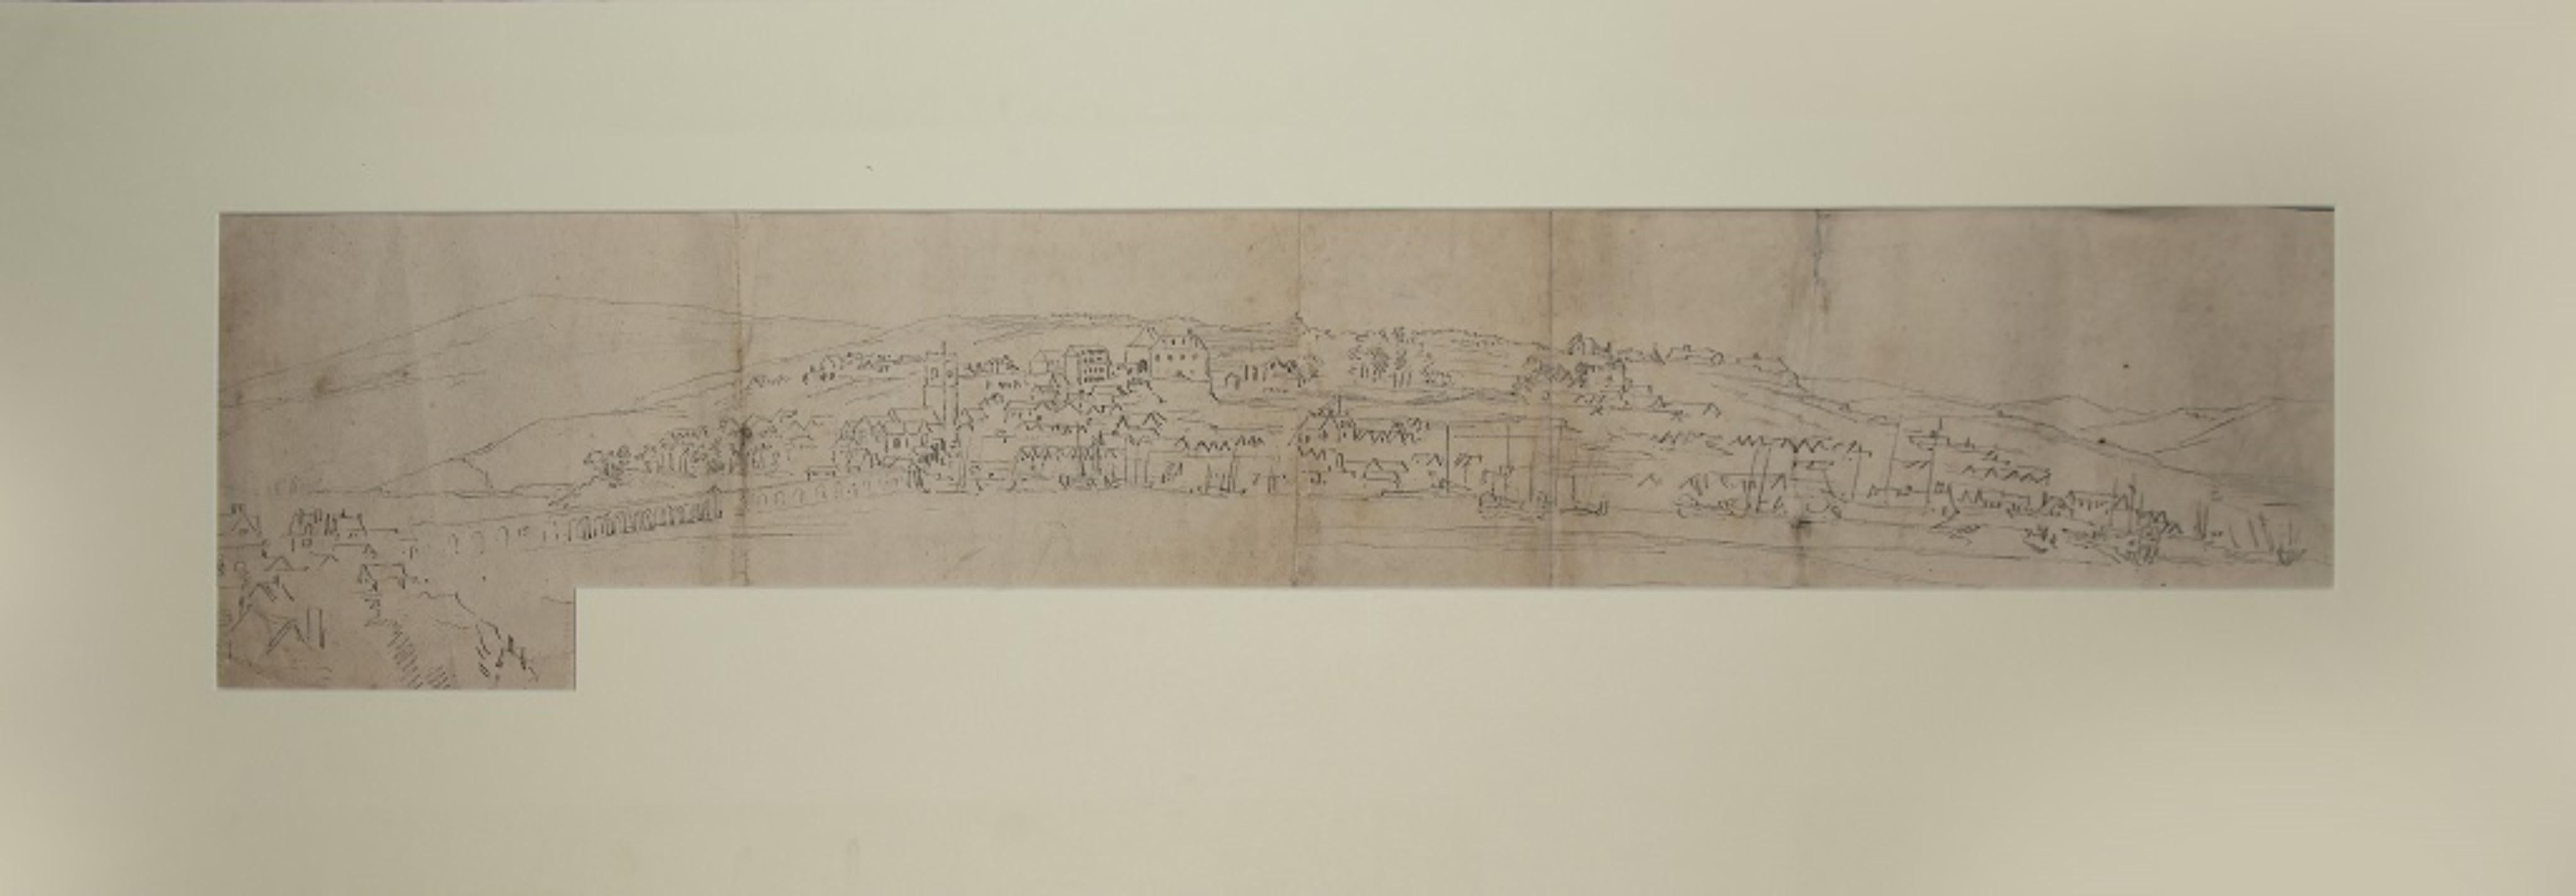 Landscape - Original Pencil Drawing by J. P. Verdussen - Mid-18th Century